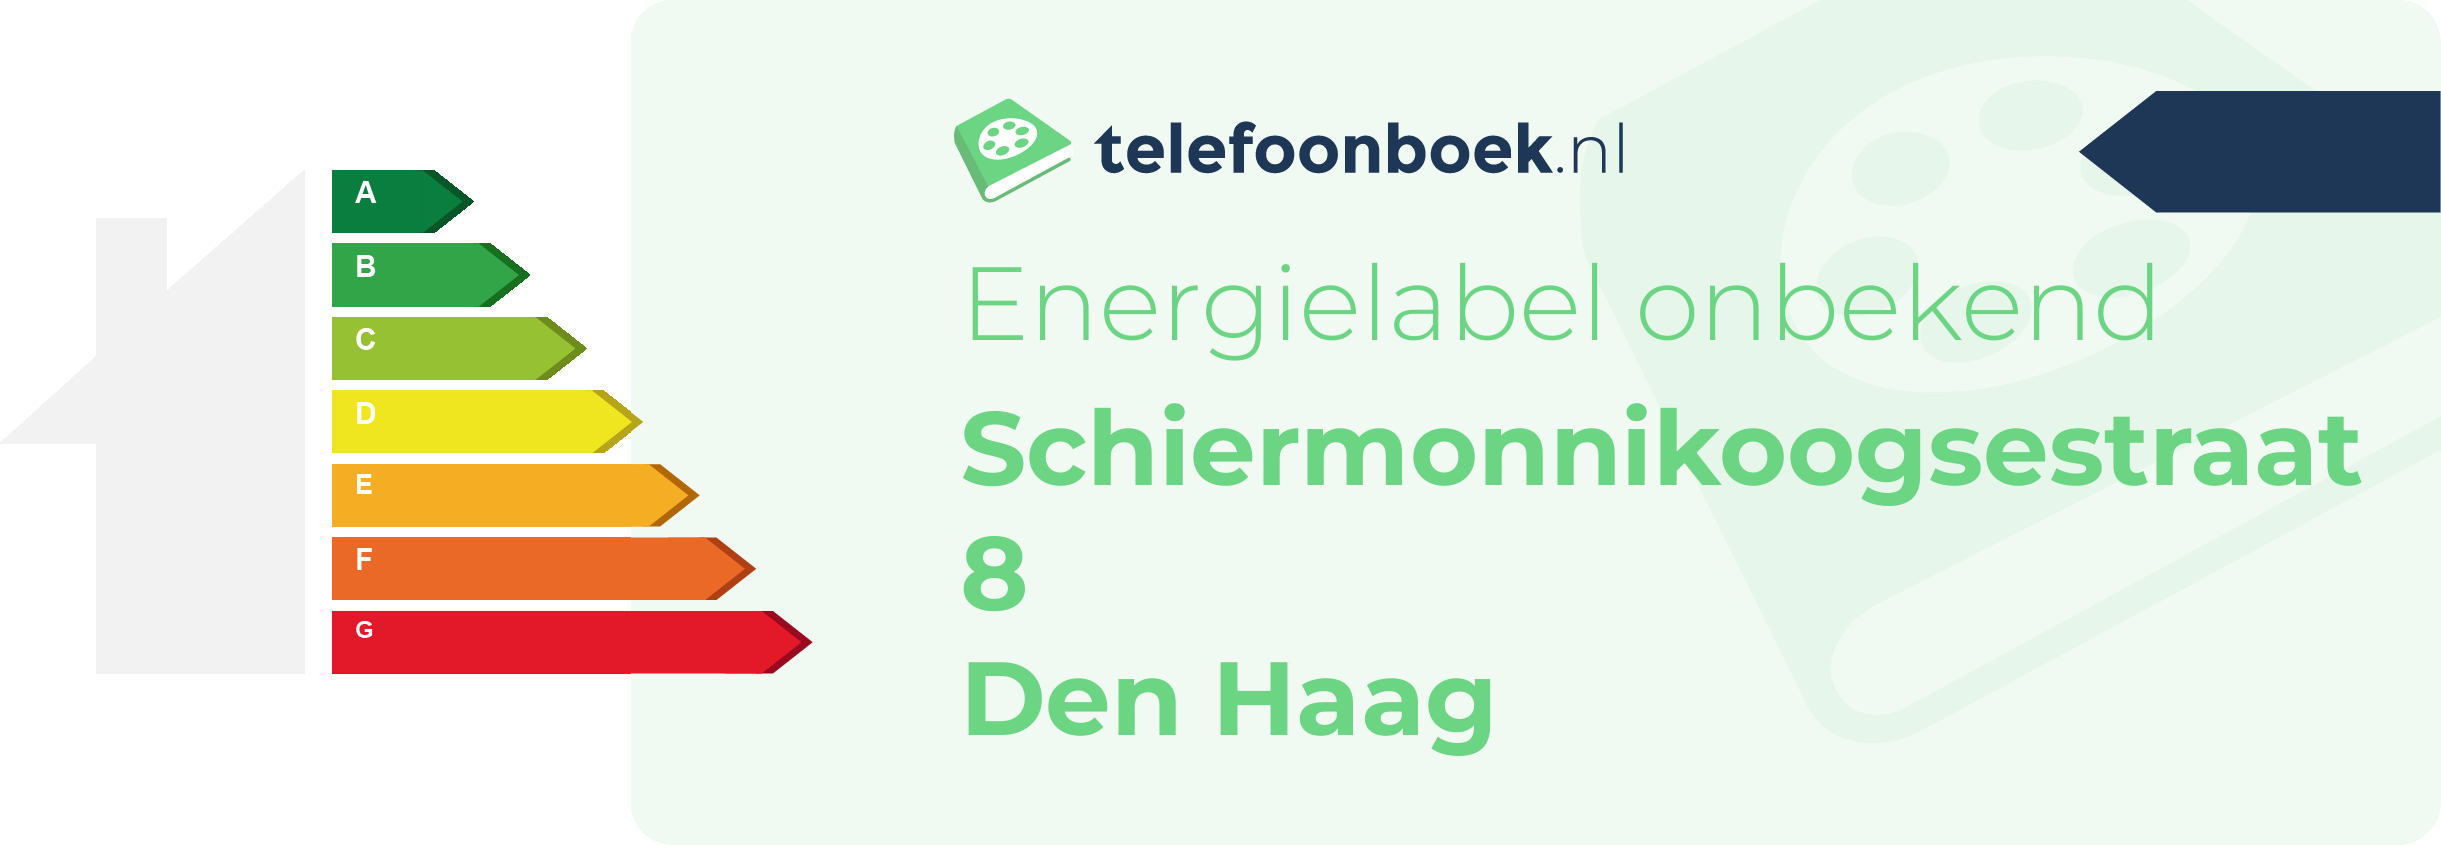 Energielabel Schiermonnikoogsestraat 8 Den Haag